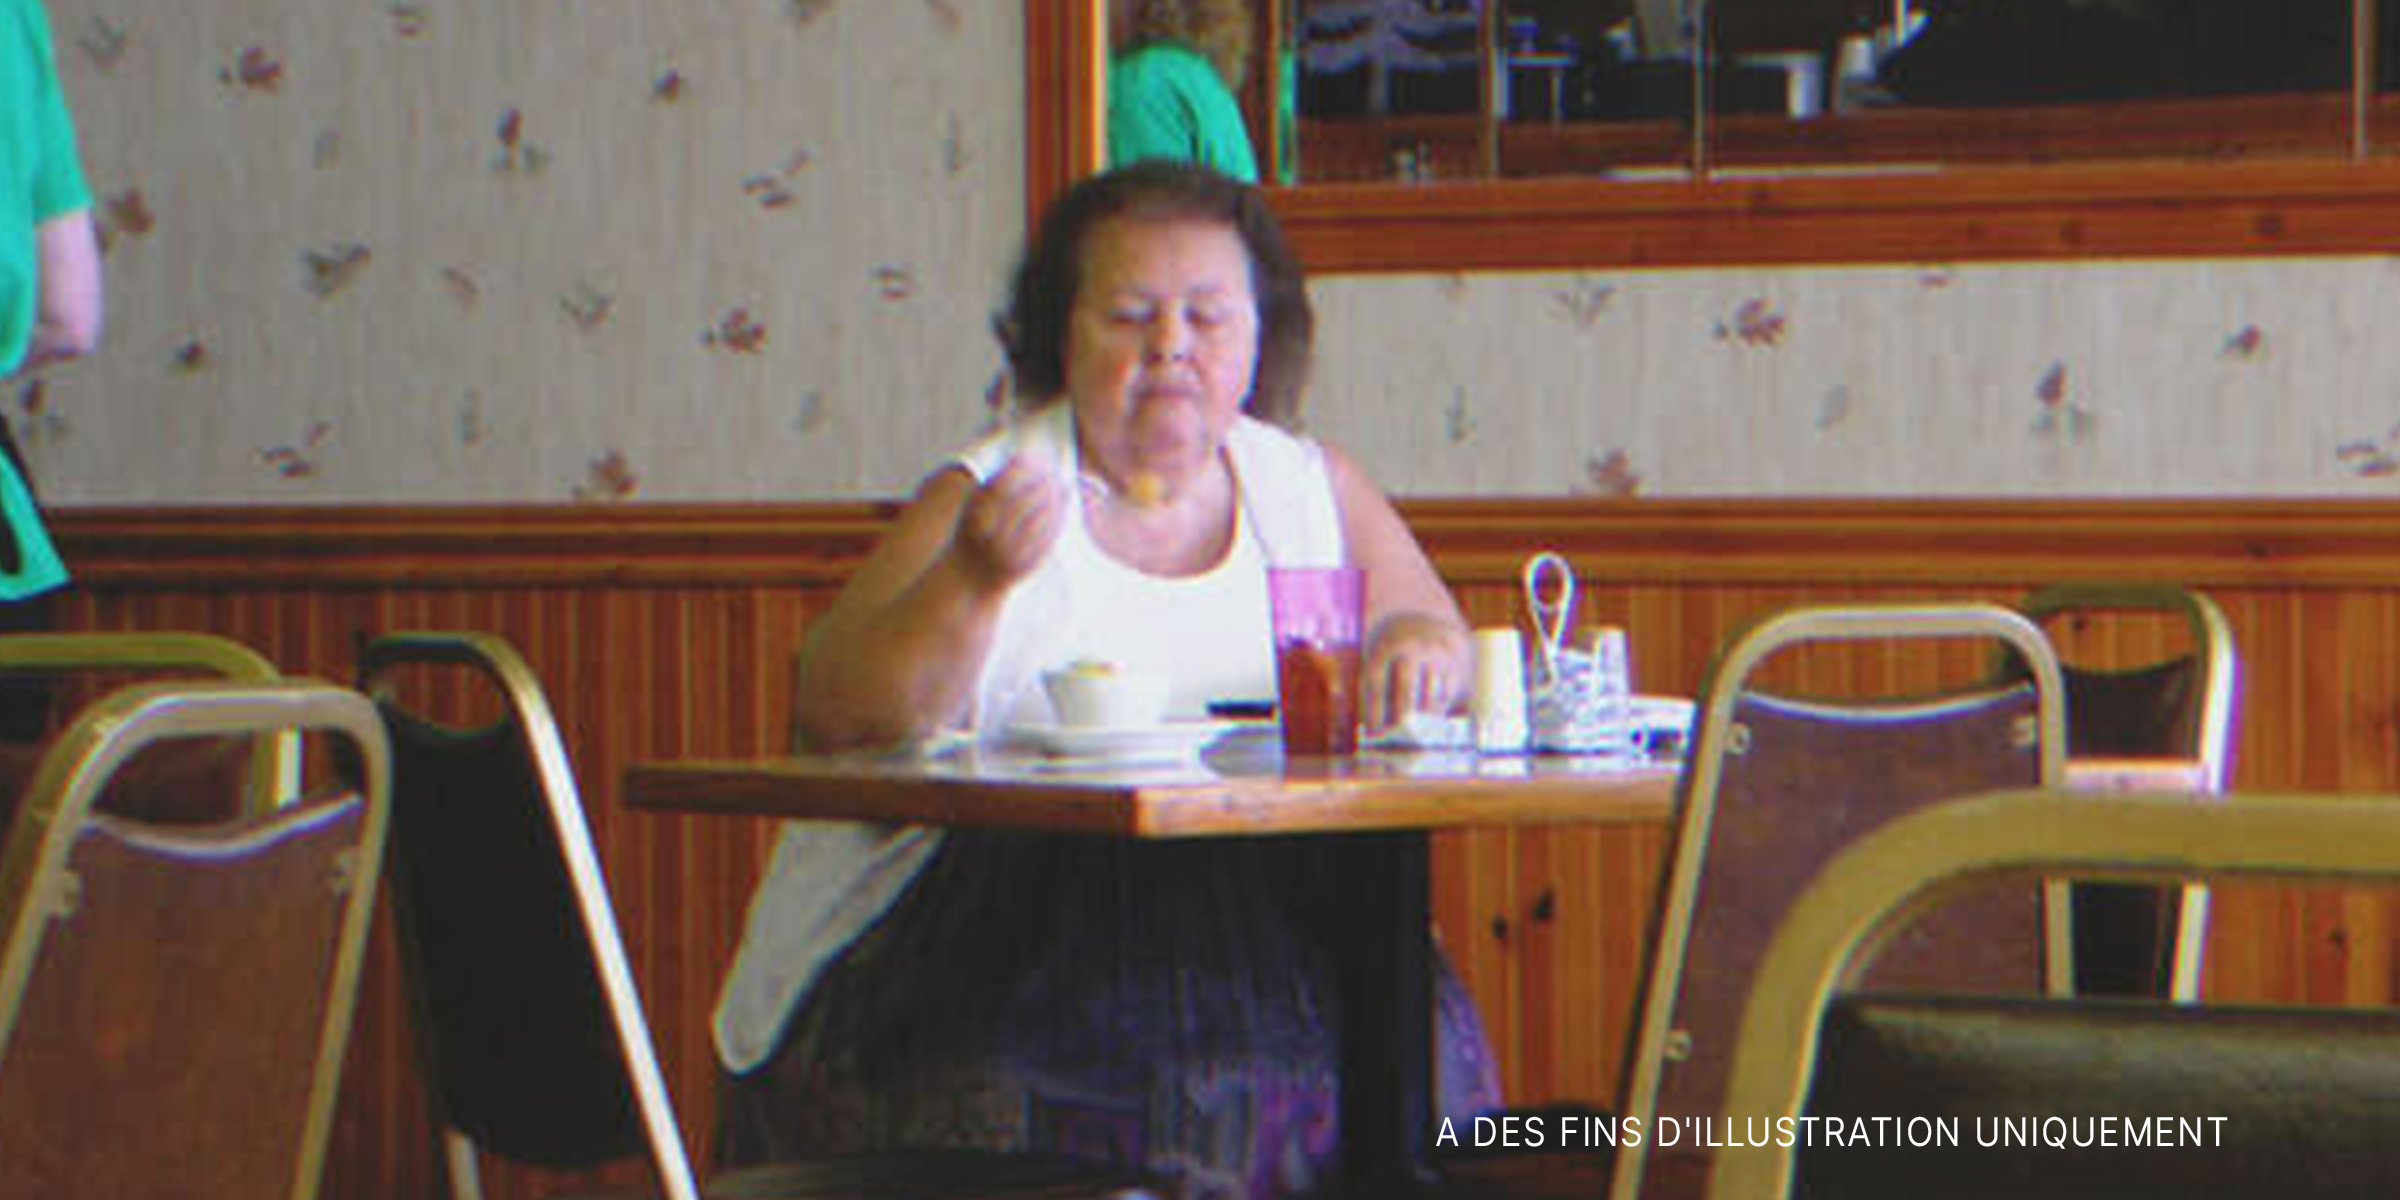 Une femme mangeant dans un restaurant | Source : Flickr / joguldi (CC BY 2.0)